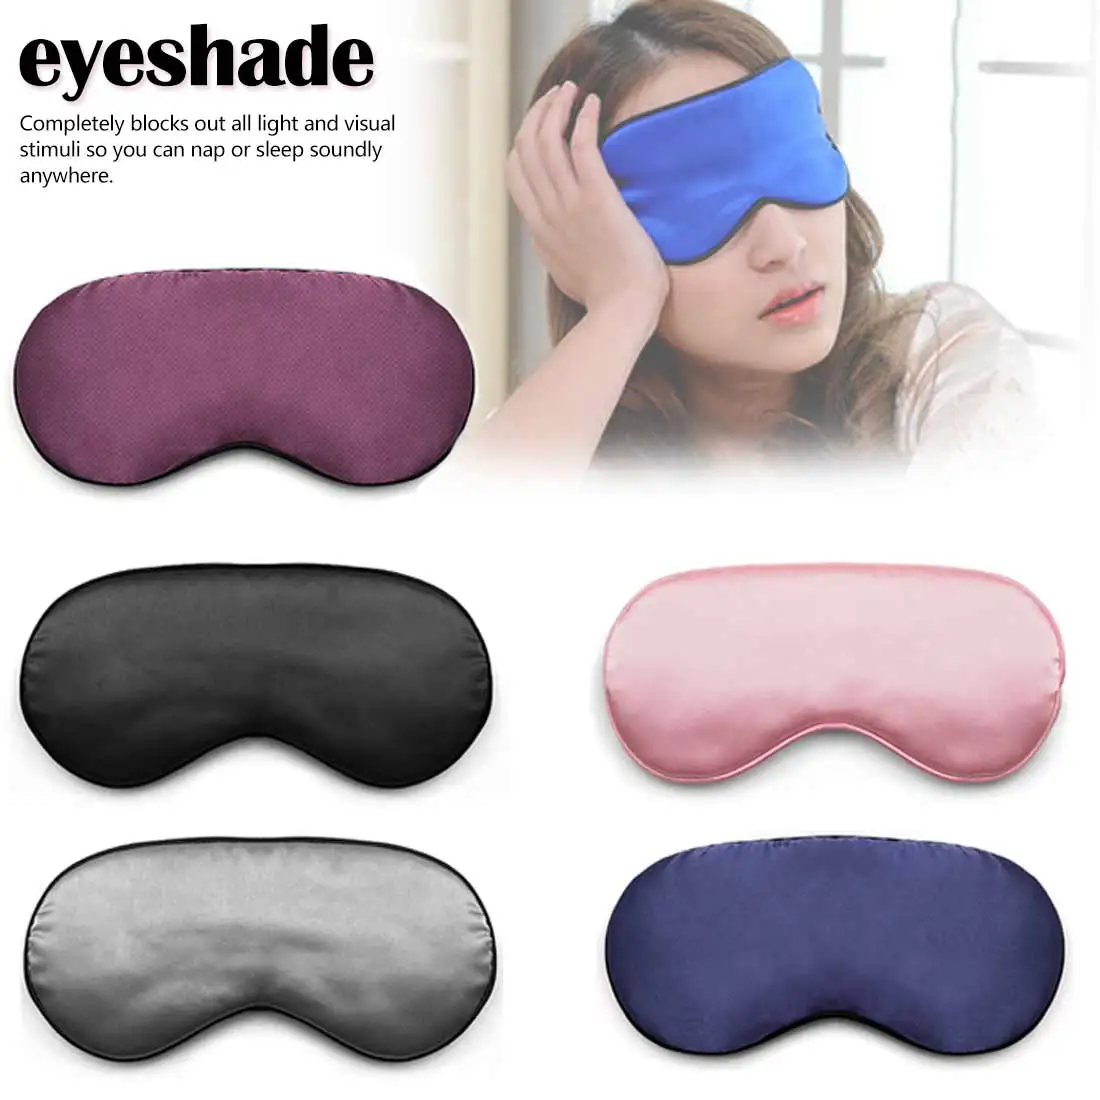 Двухсторонняя затеняющая маска для сна маска для глаз крышка повязка на глаз повязки для век здоровье сон экран против света